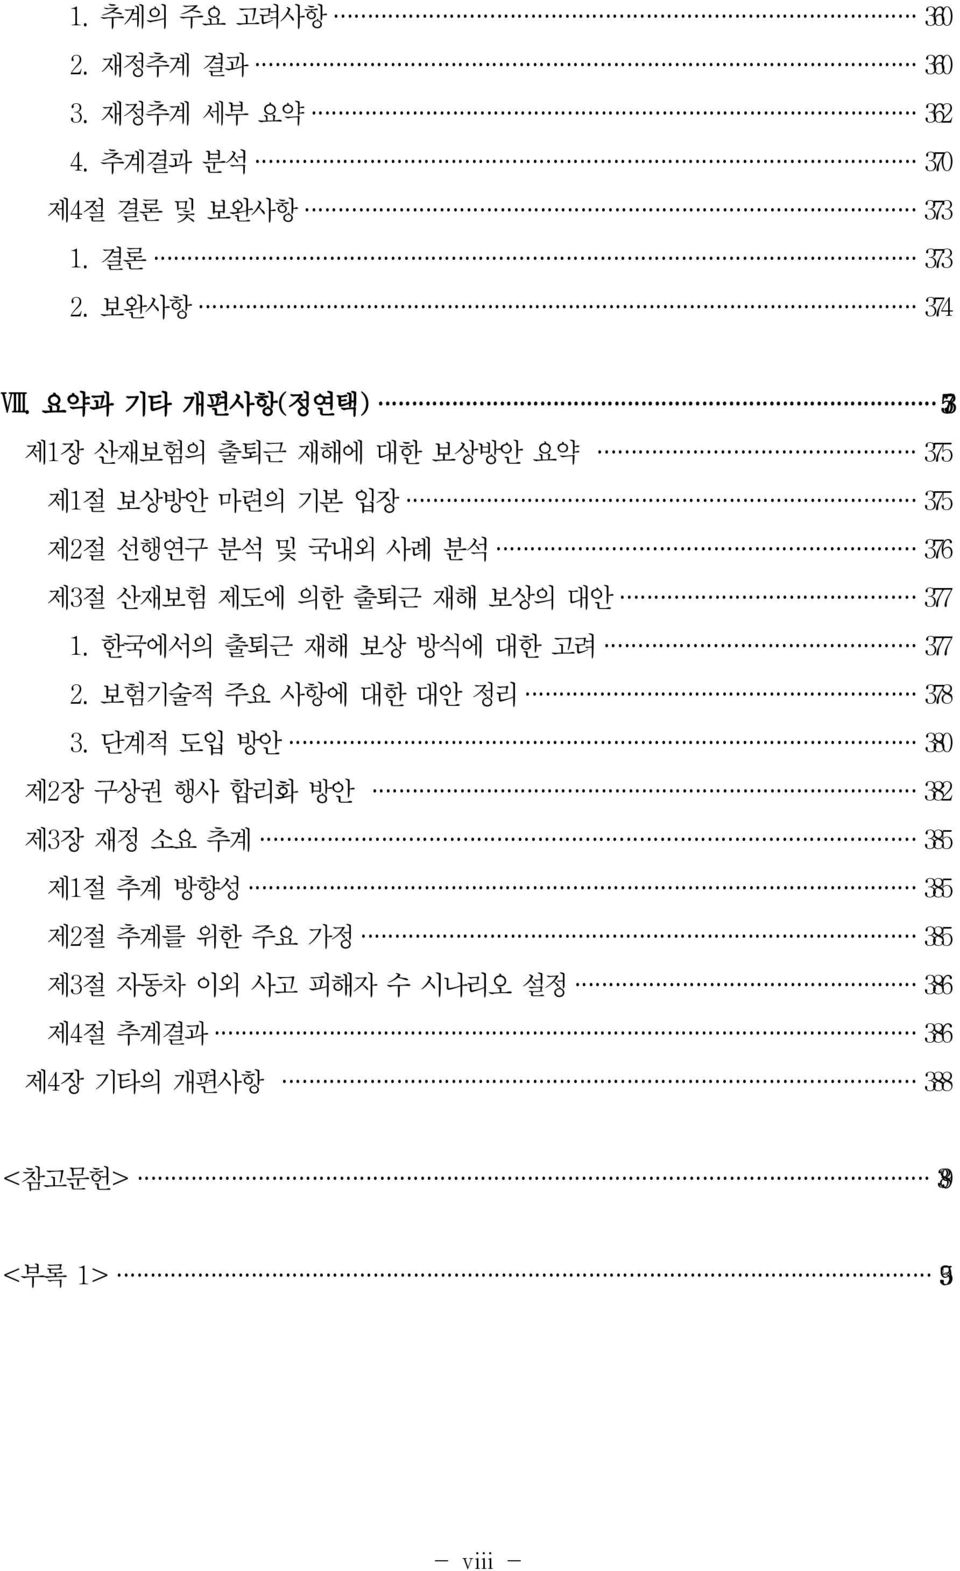 출퇴근 재해 보상의 대안 377 1. 한국에서의 출퇴근 재해 보상 방식에 대한 고려 377 2. 보험기술적 주요 사항에 대한 대안 정리 378 3.